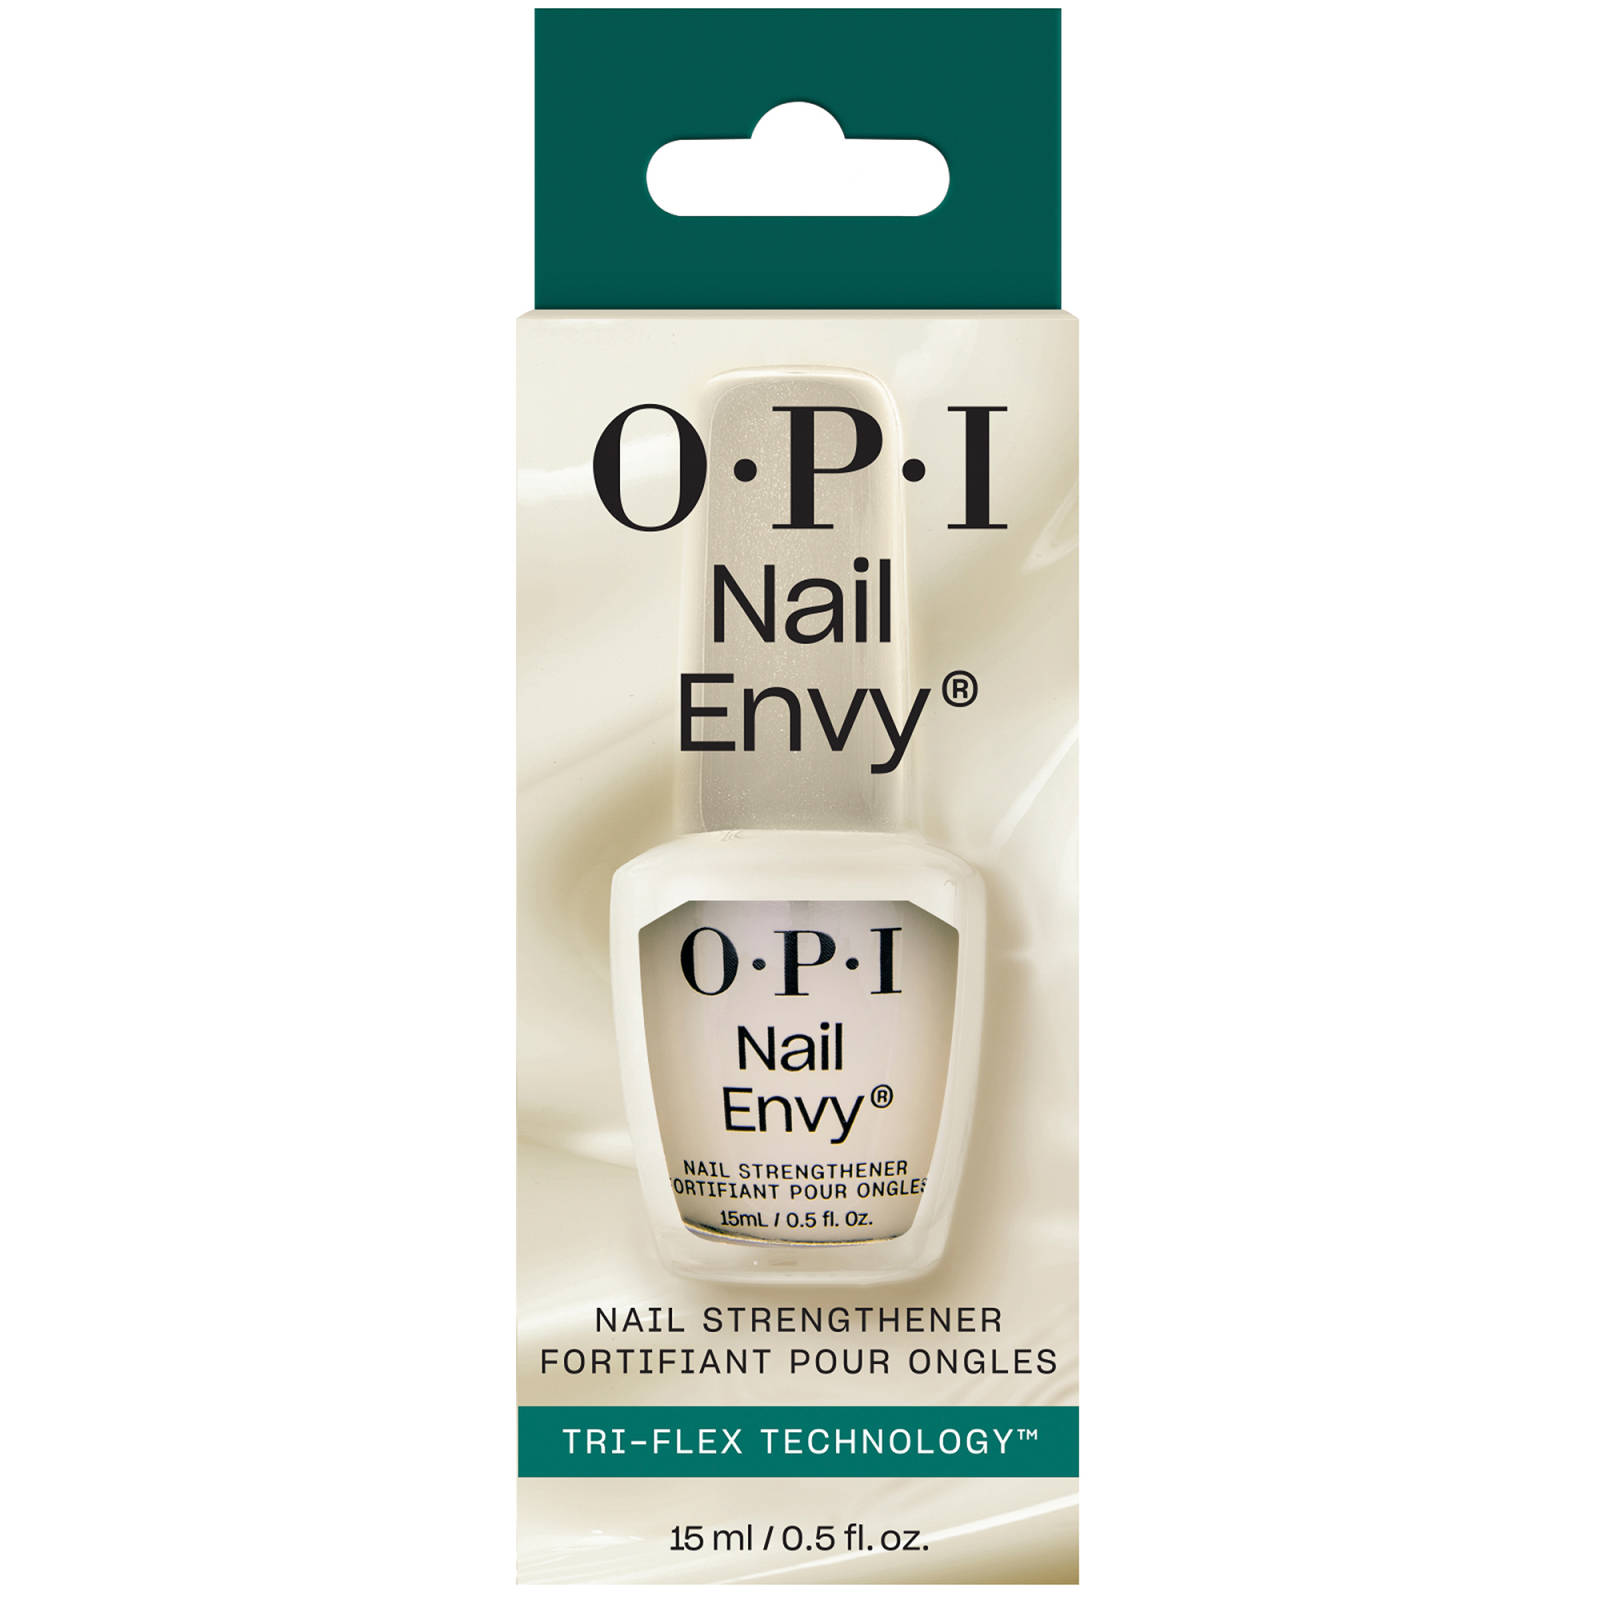 OPI Nail Envy Nail Treatment Original Formula 15ml